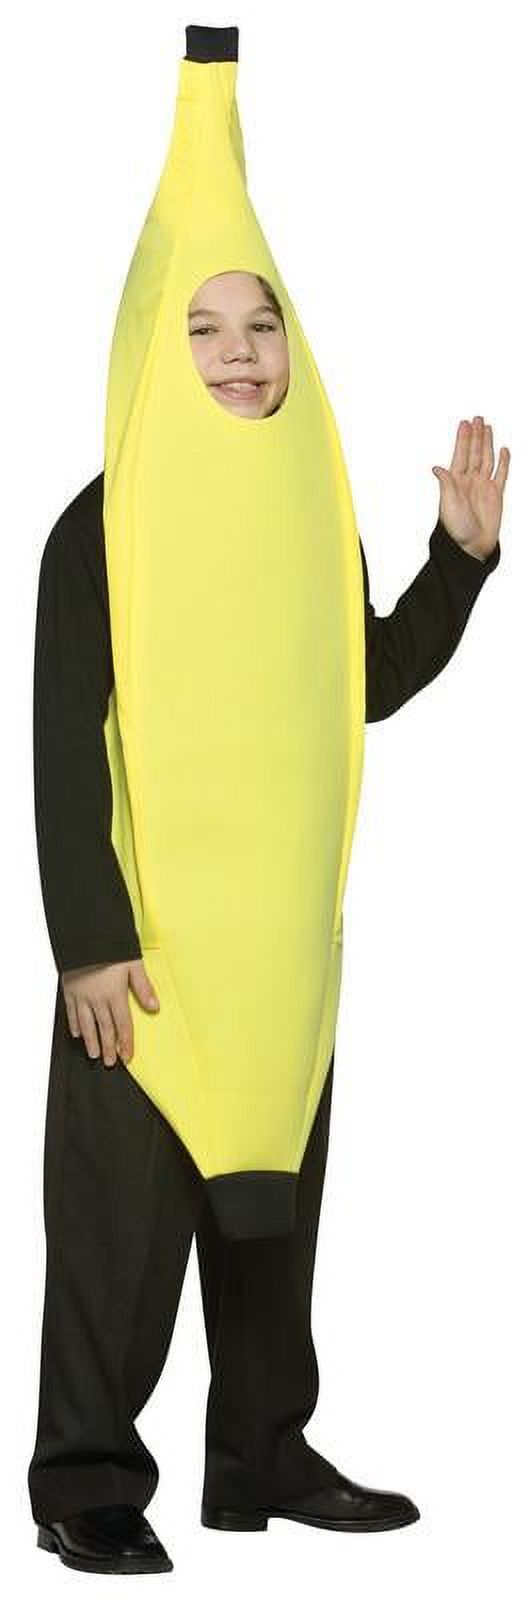 Rasta Imposta Banana Halloween Costume, Yellow, Child Size 7-10 - image 1 of 2